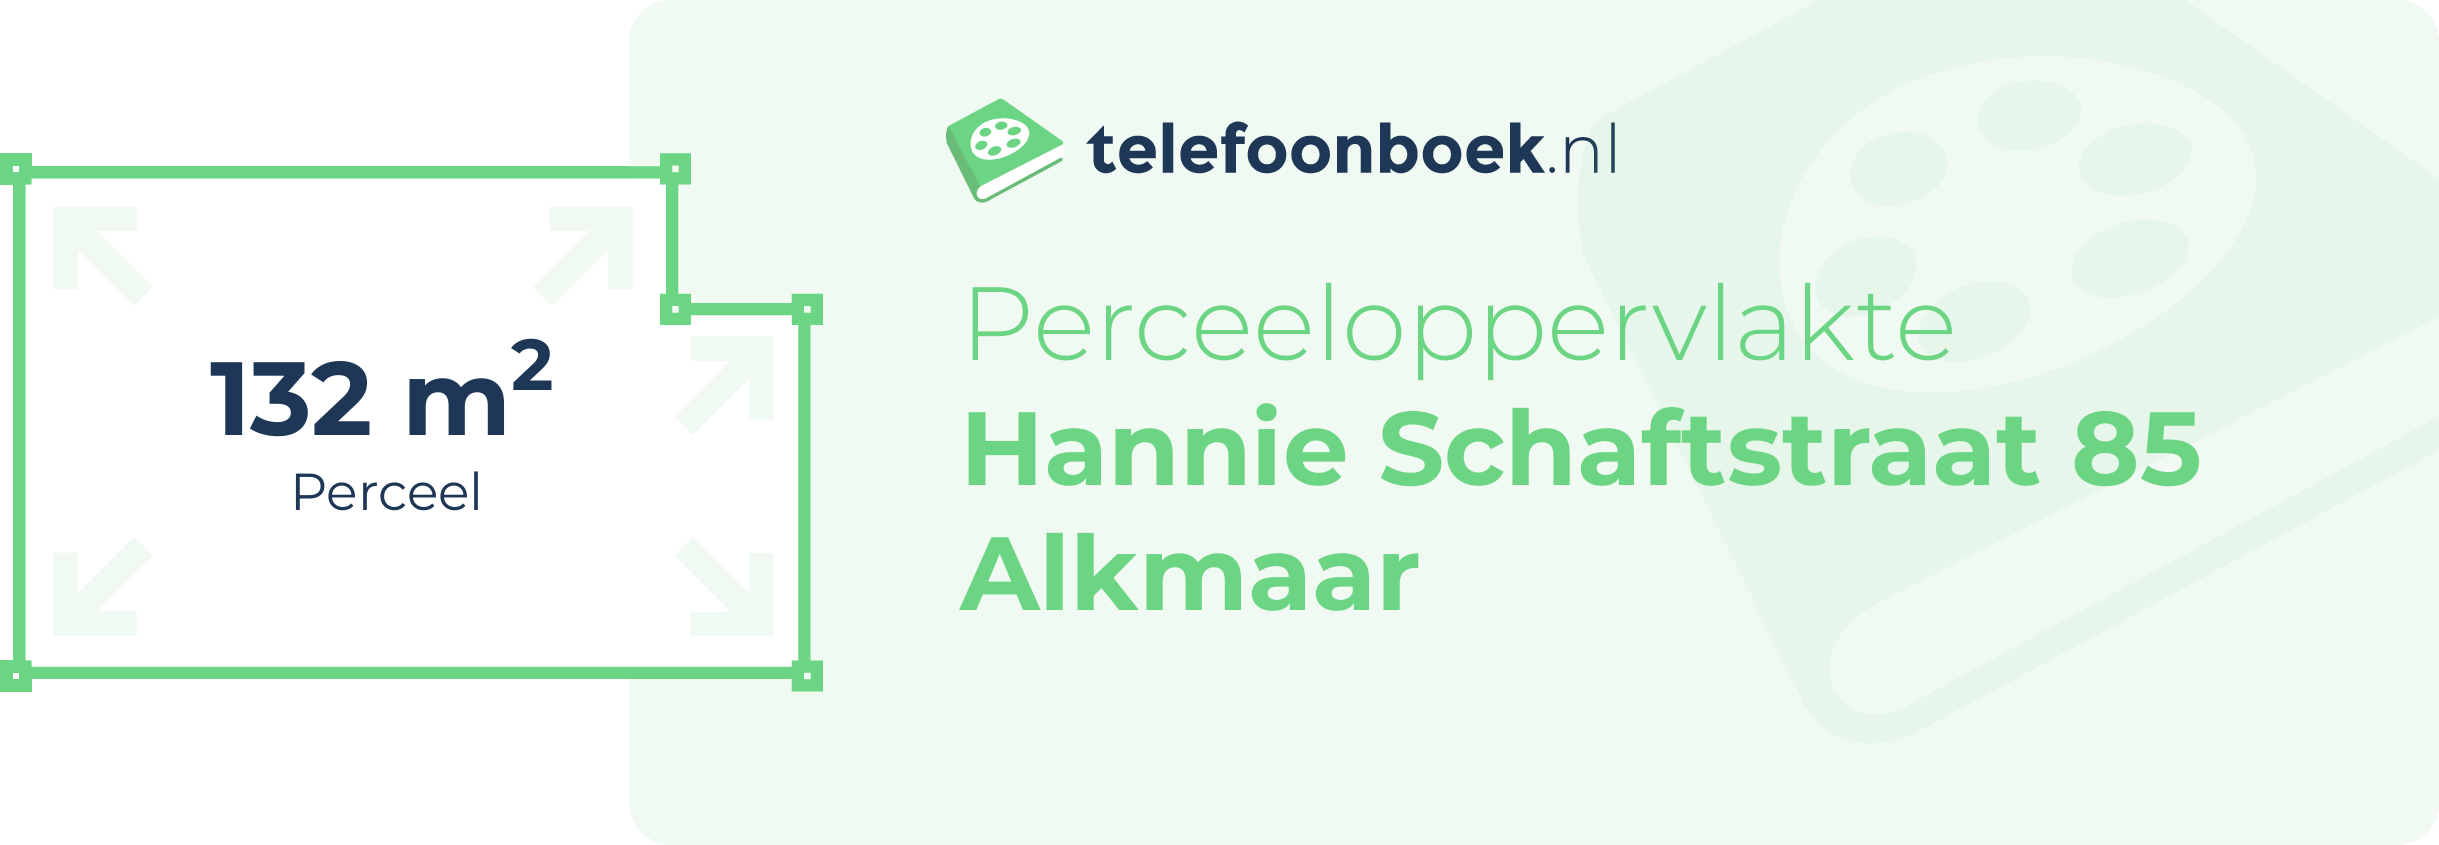 Perceeloppervlakte Hannie Schaftstraat 85 Alkmaar